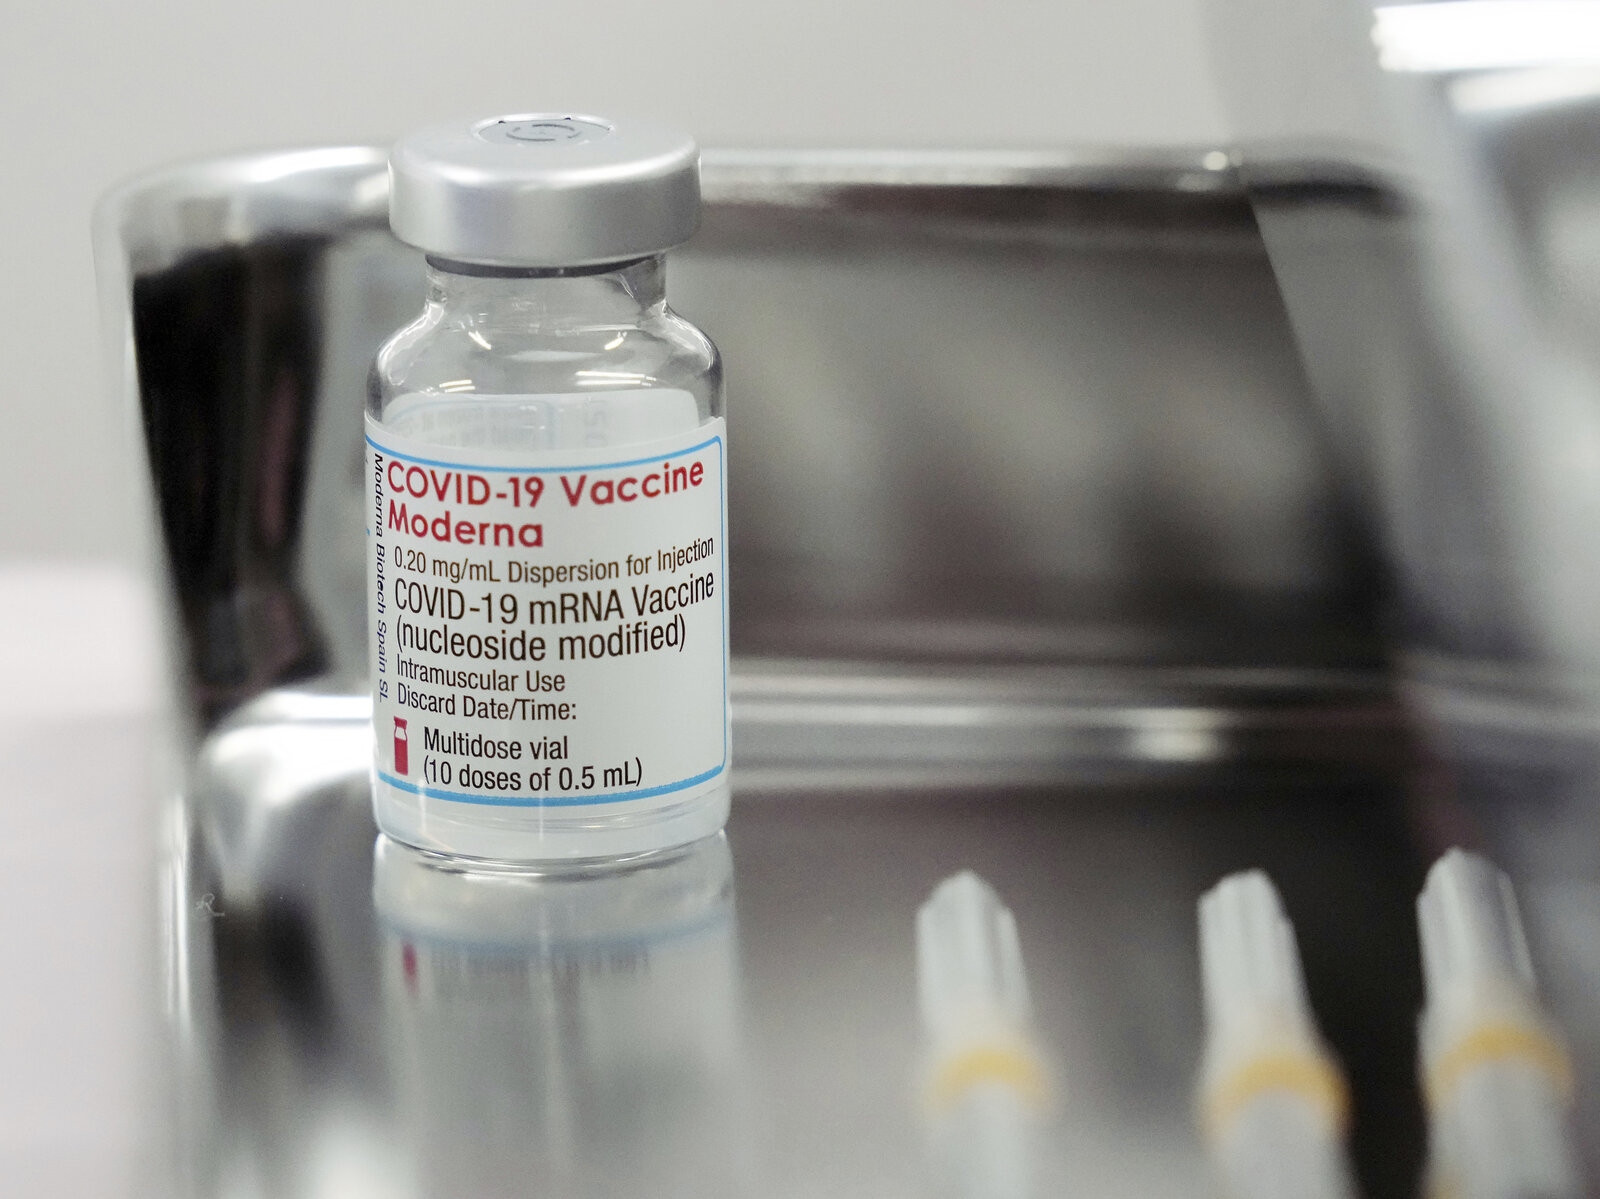 Covid-19: Ấn Độ kỷ lục ngày tiêm 10 liều vaccine, Nhật Bản 2 người tử vong sau khi tiêm vaccine nhiễm chất lạ